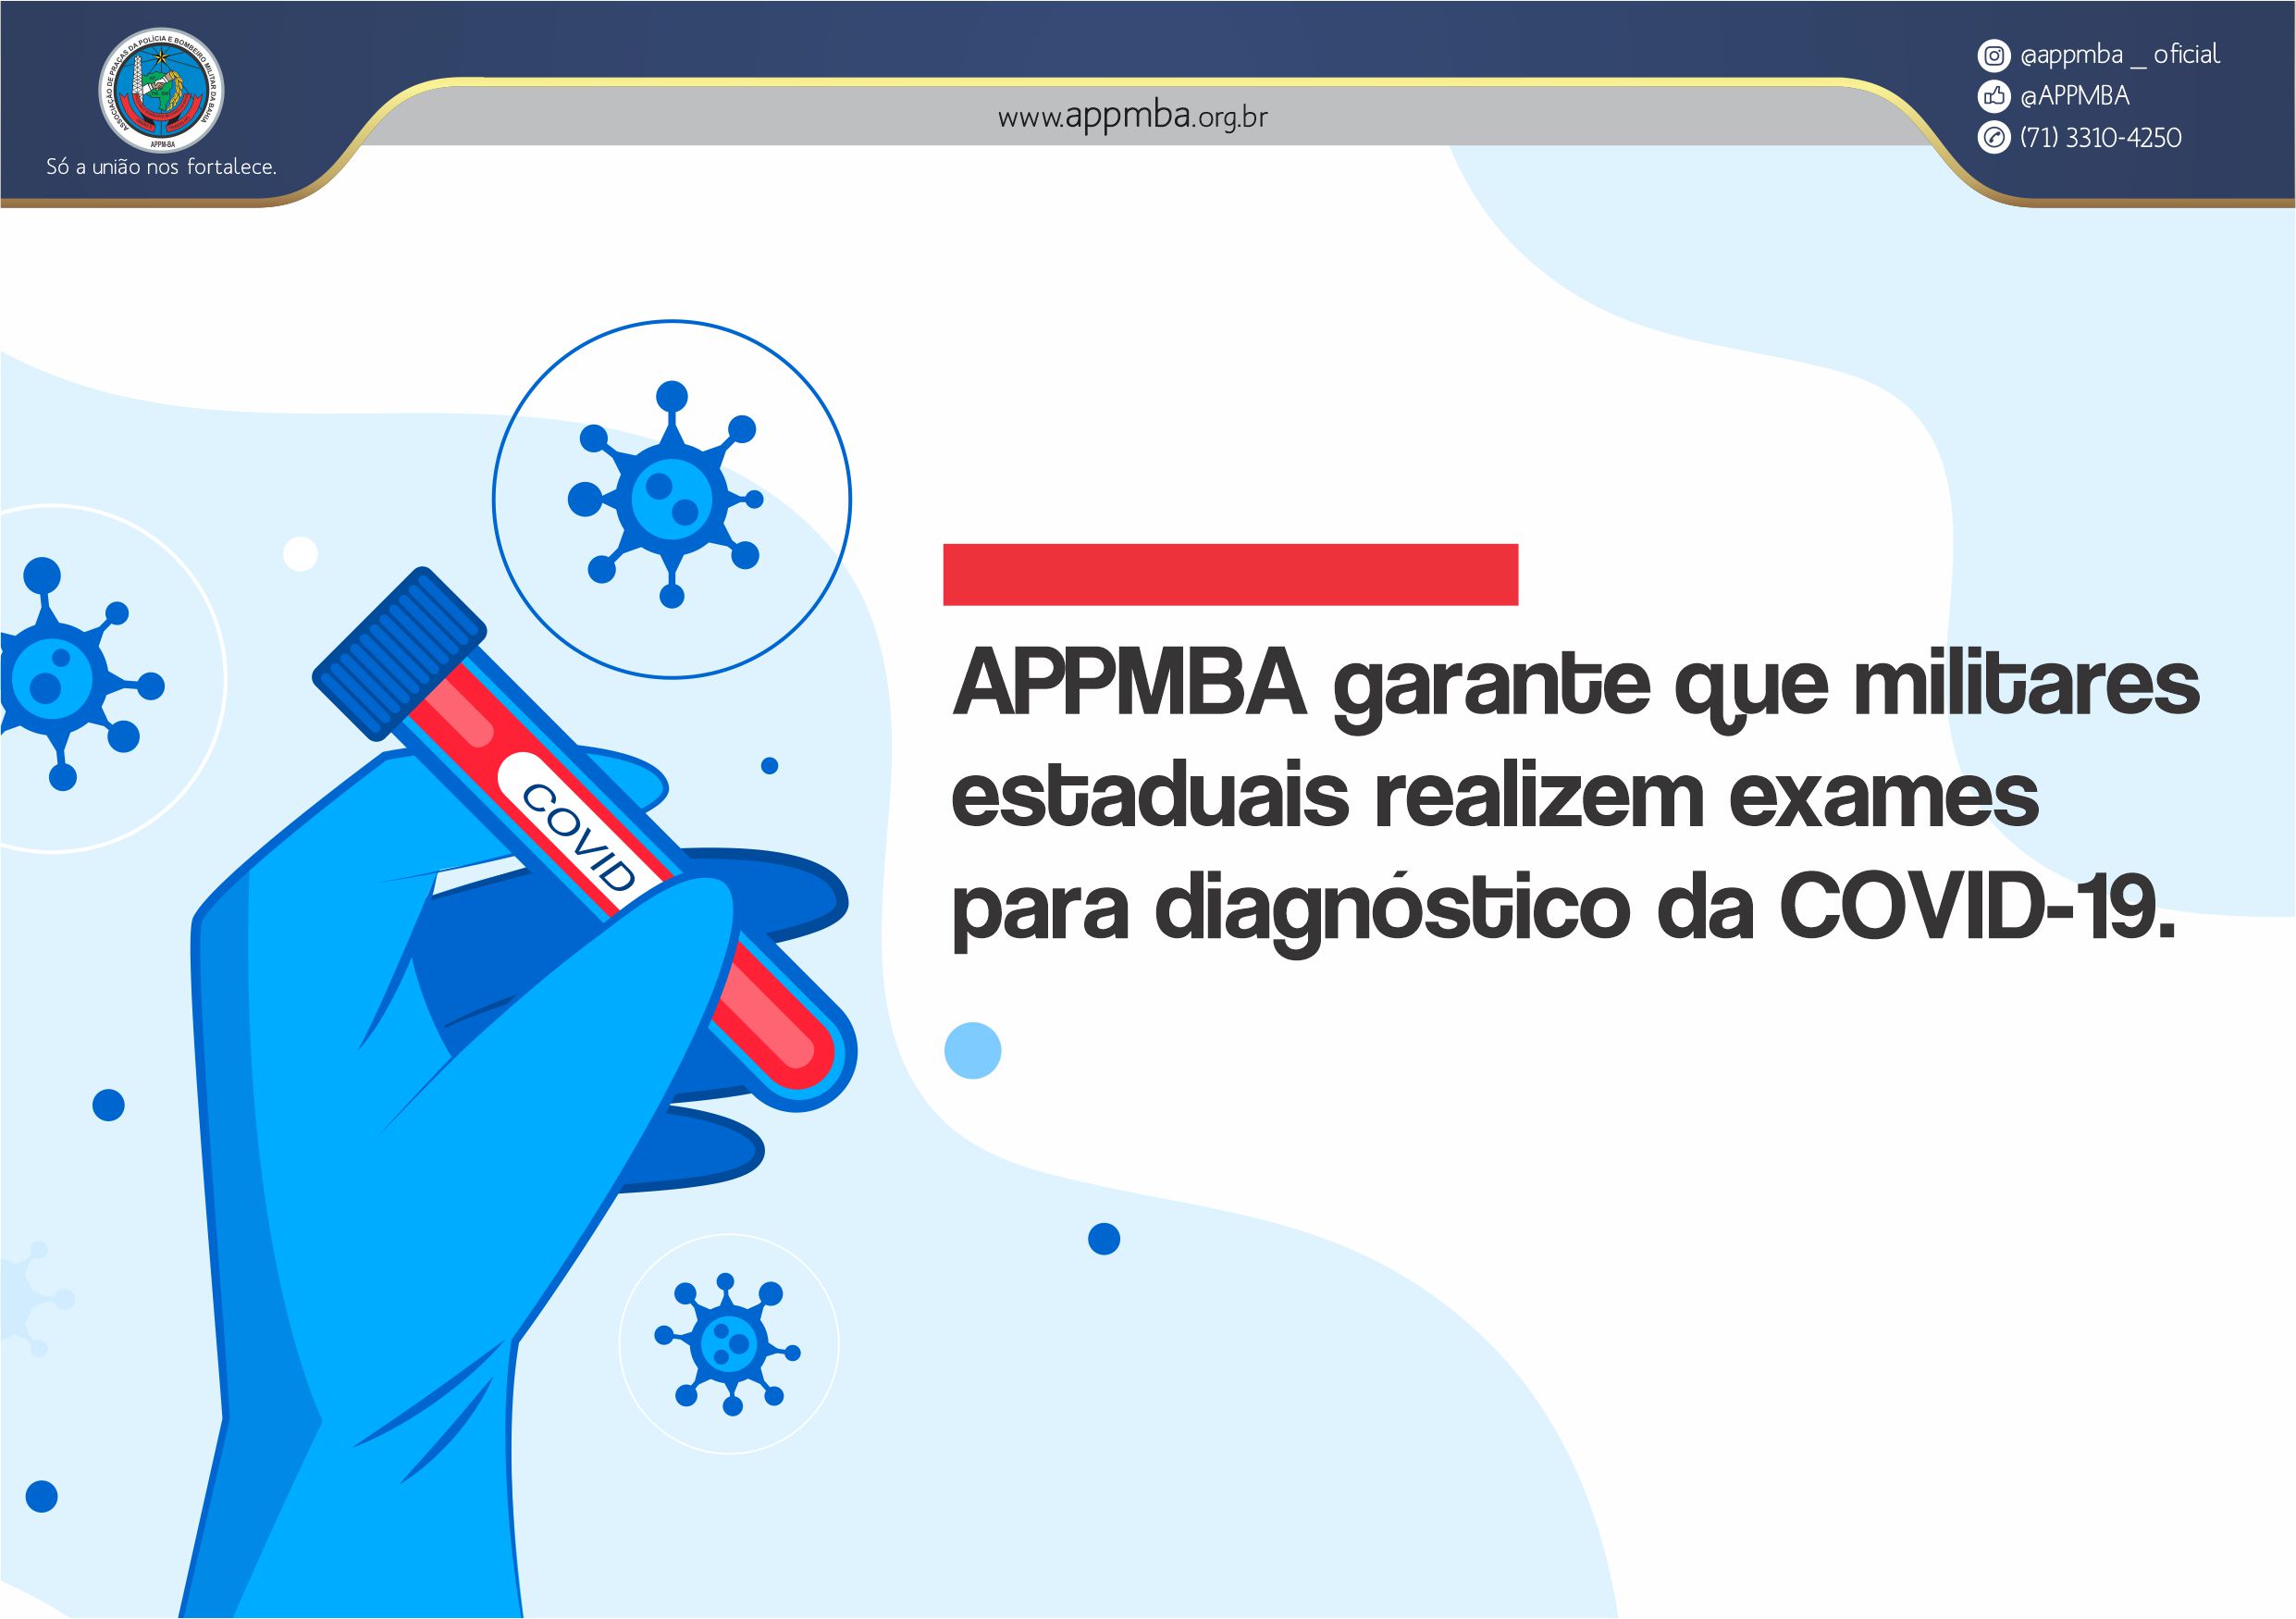 APPMBA garante que militares estaduais realizem exames para diagnóstico da COVID-19